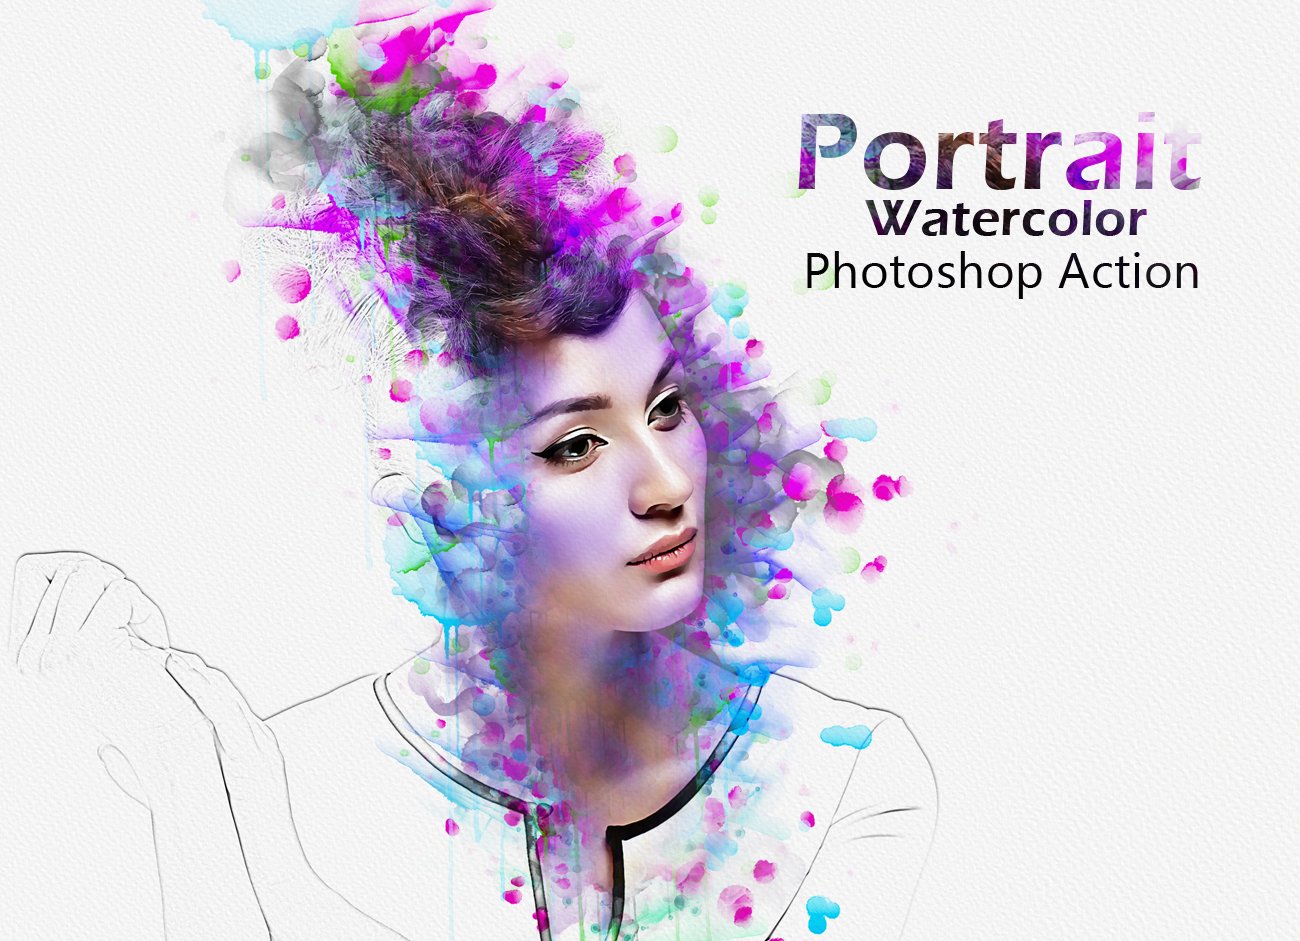 Portrait Watercolor Photoshop Actioncover image.